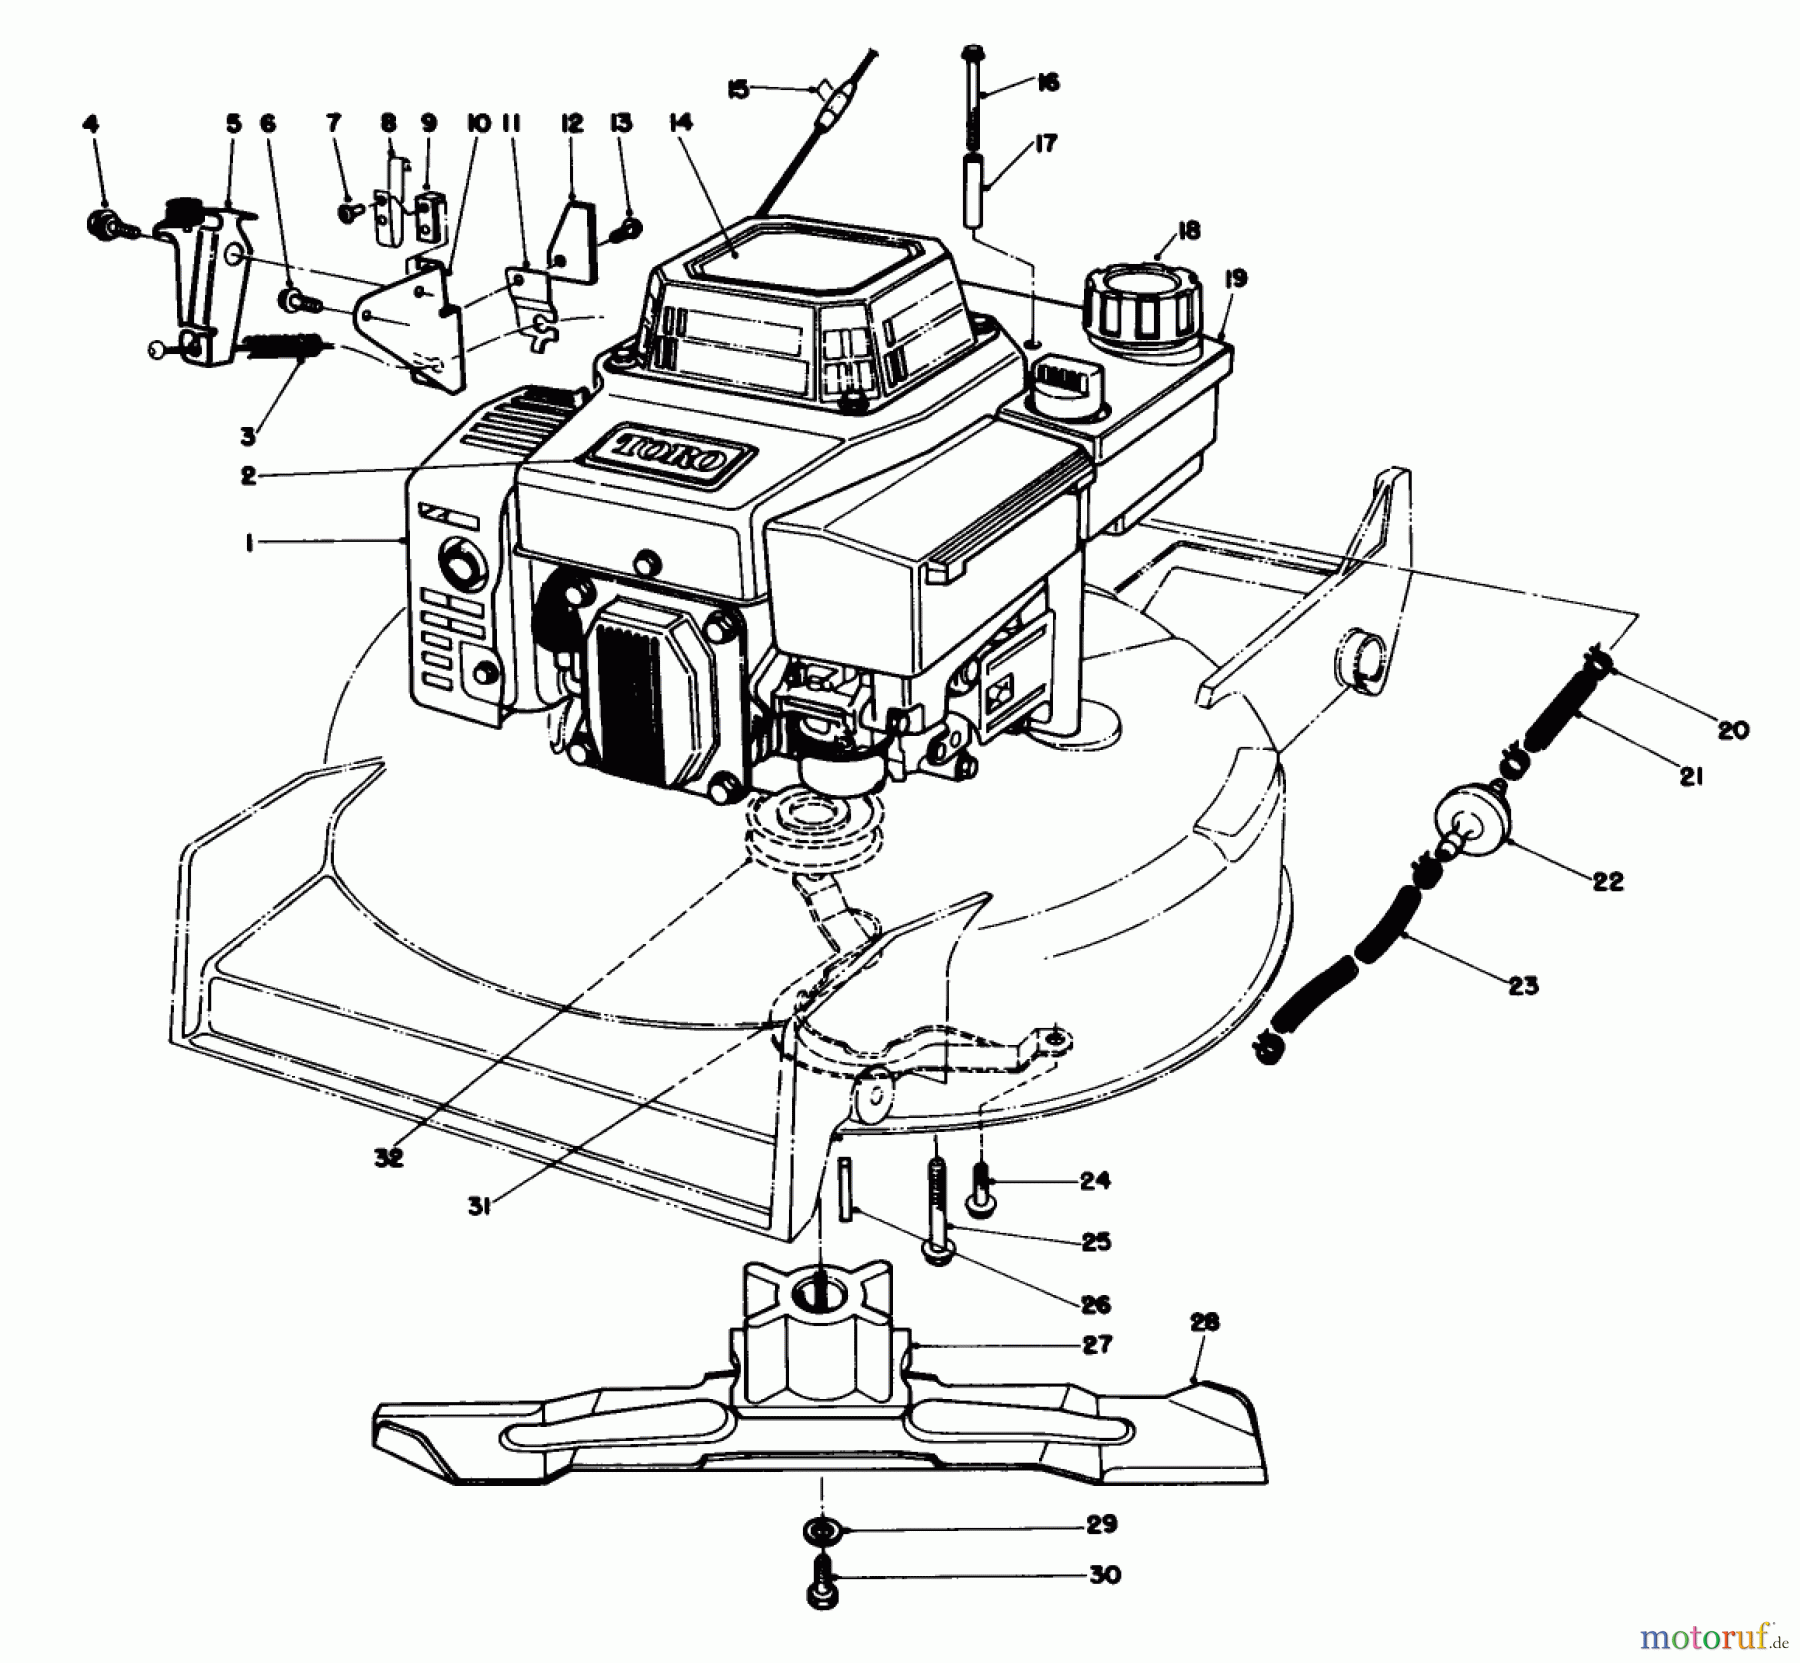  Toro Neu Mowers, Walk-Behind Seite 1 20620 - Toro Lawnmower, 1987 (7000001-7999999) ENGINE ASSEMBLY